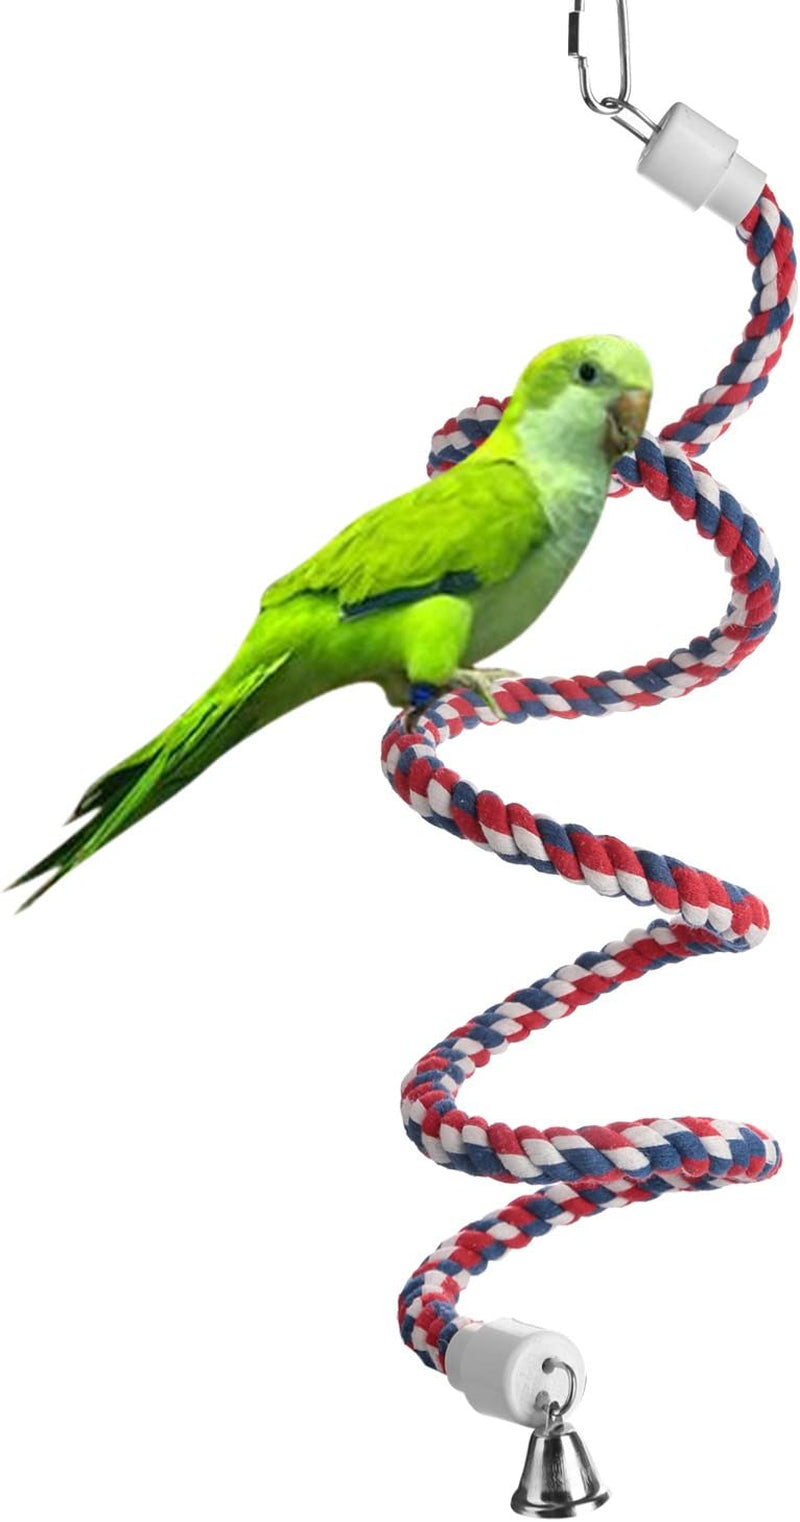 Aigou Bird Rope Perch,Spiral Cotton Parrot Swing Climbing Standing Bird Toys with Bell (Small - 52 Inch) Animals & Pet Supplies > Pet Supplies > Bird Supplies > Bird Toys Aigou   